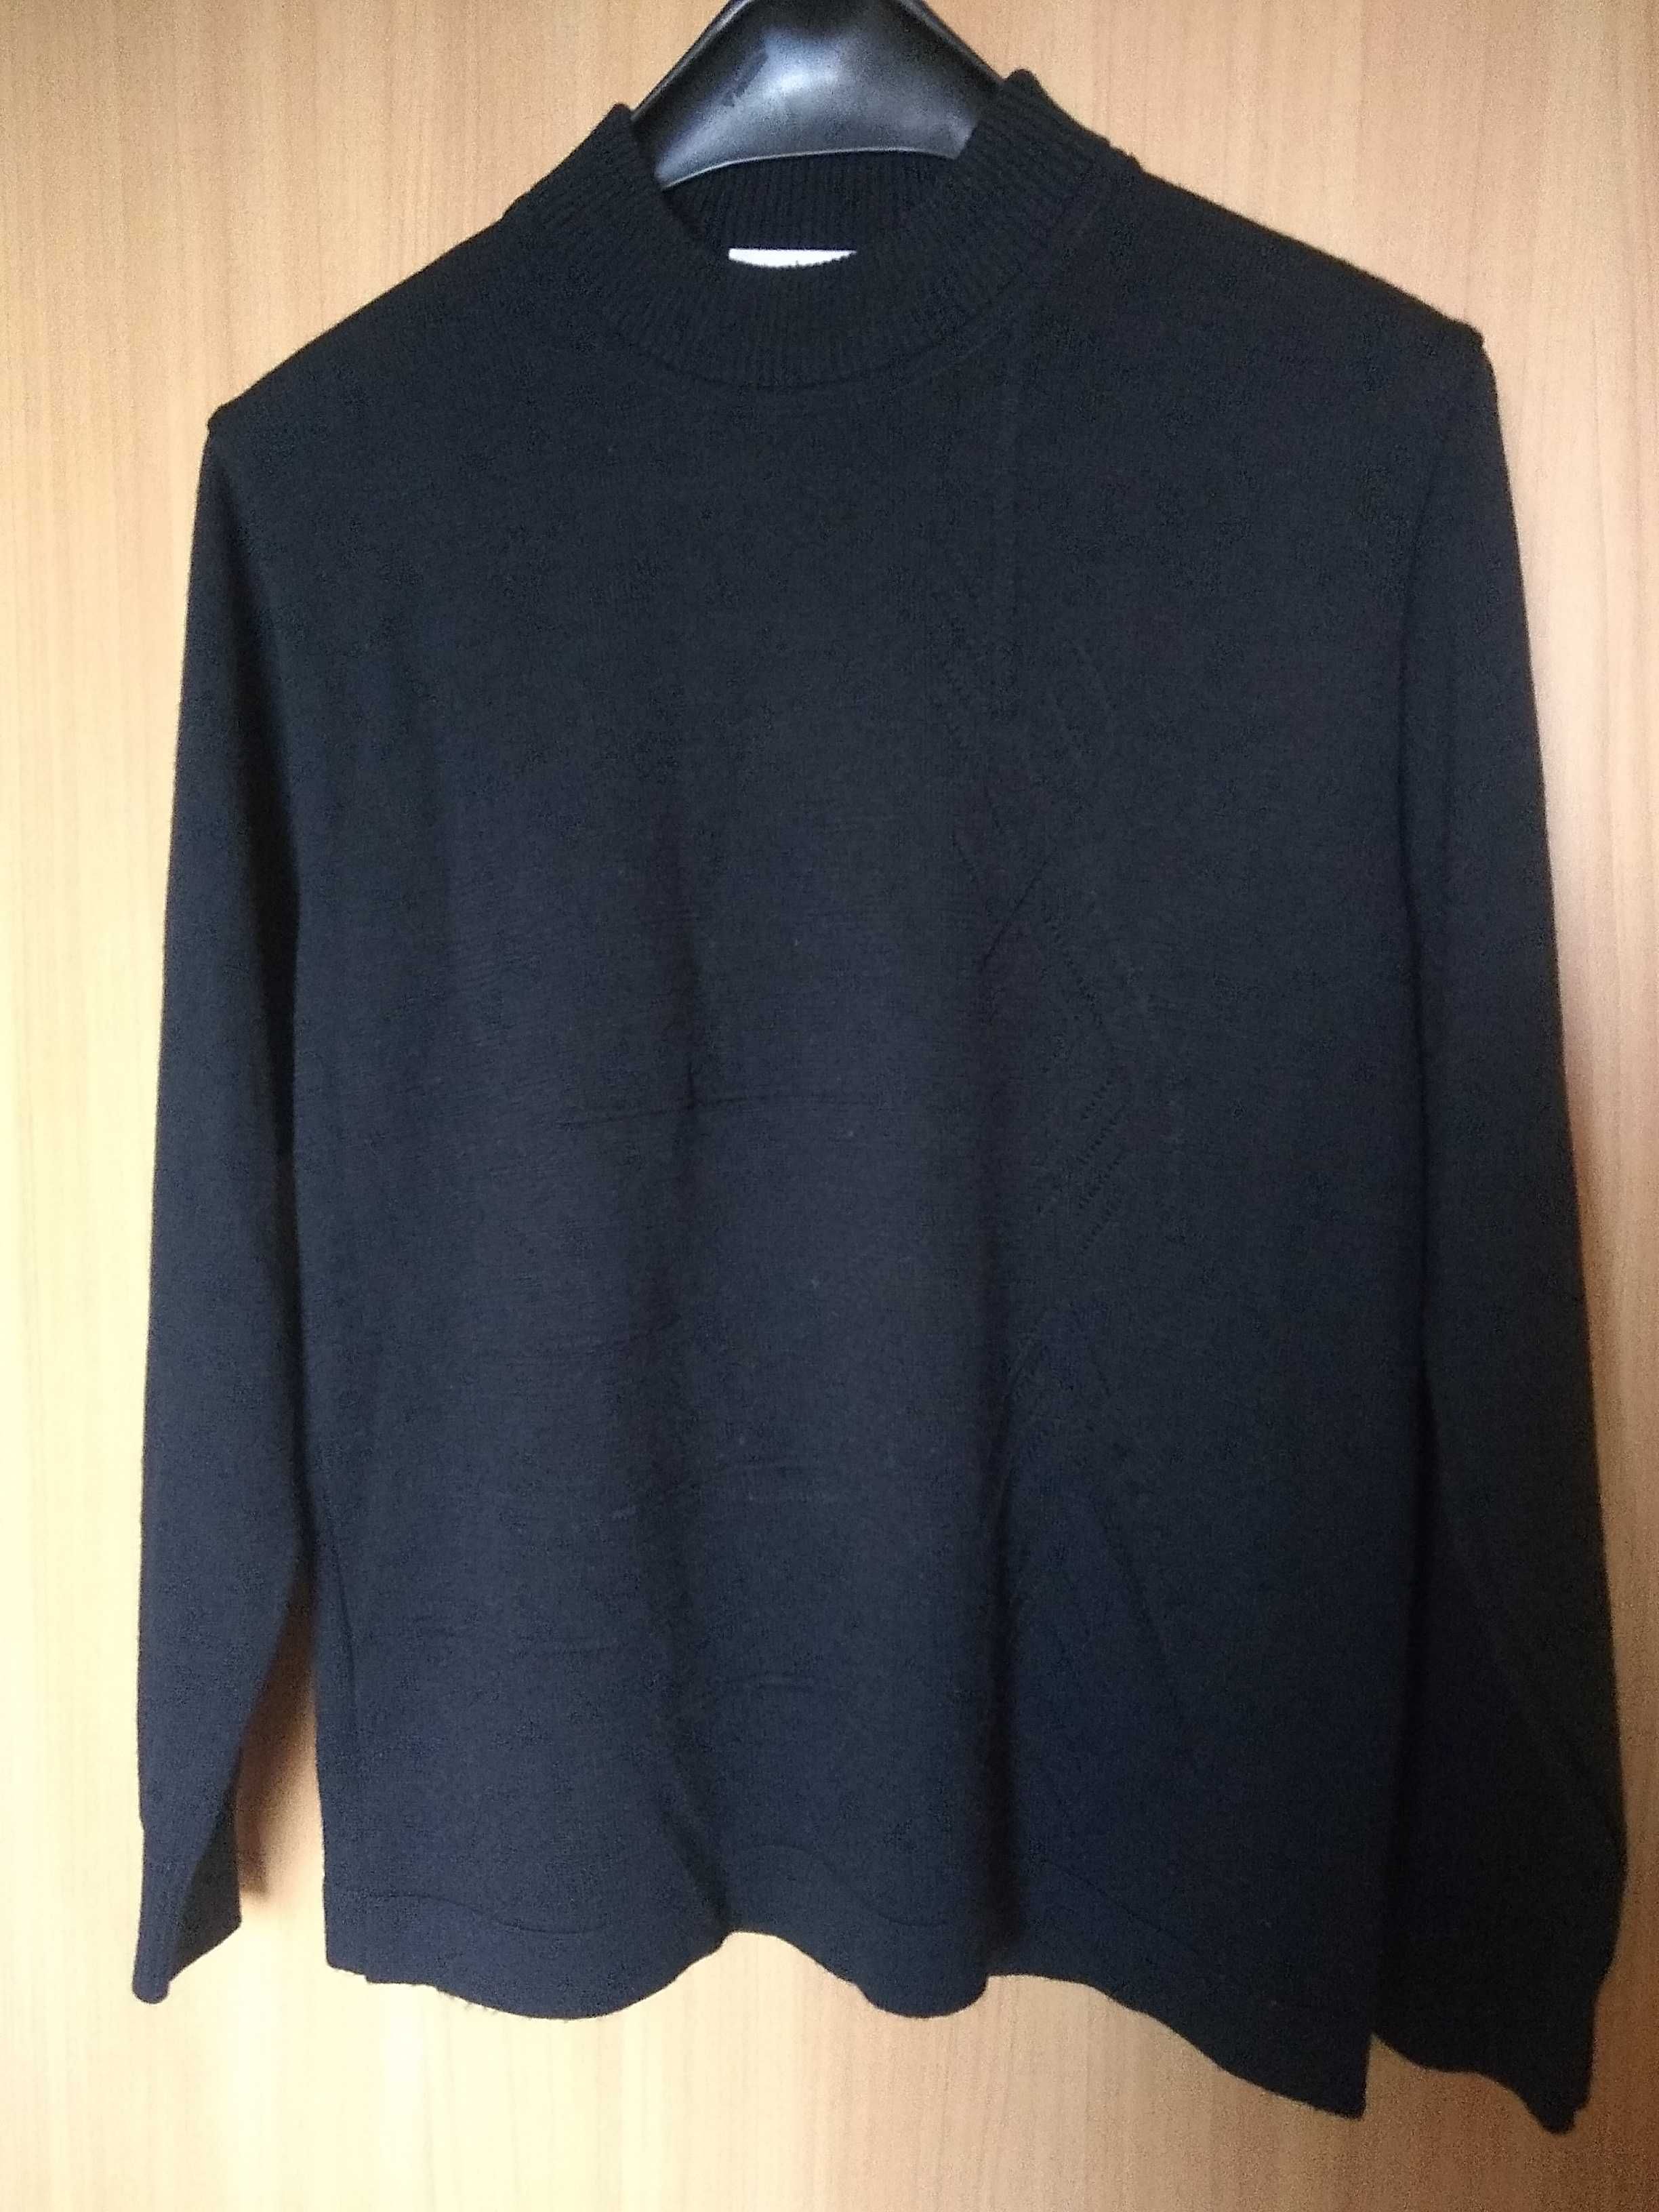 Delikatny damski sweter z półgolfem / bluza termiczna, 30% Merino